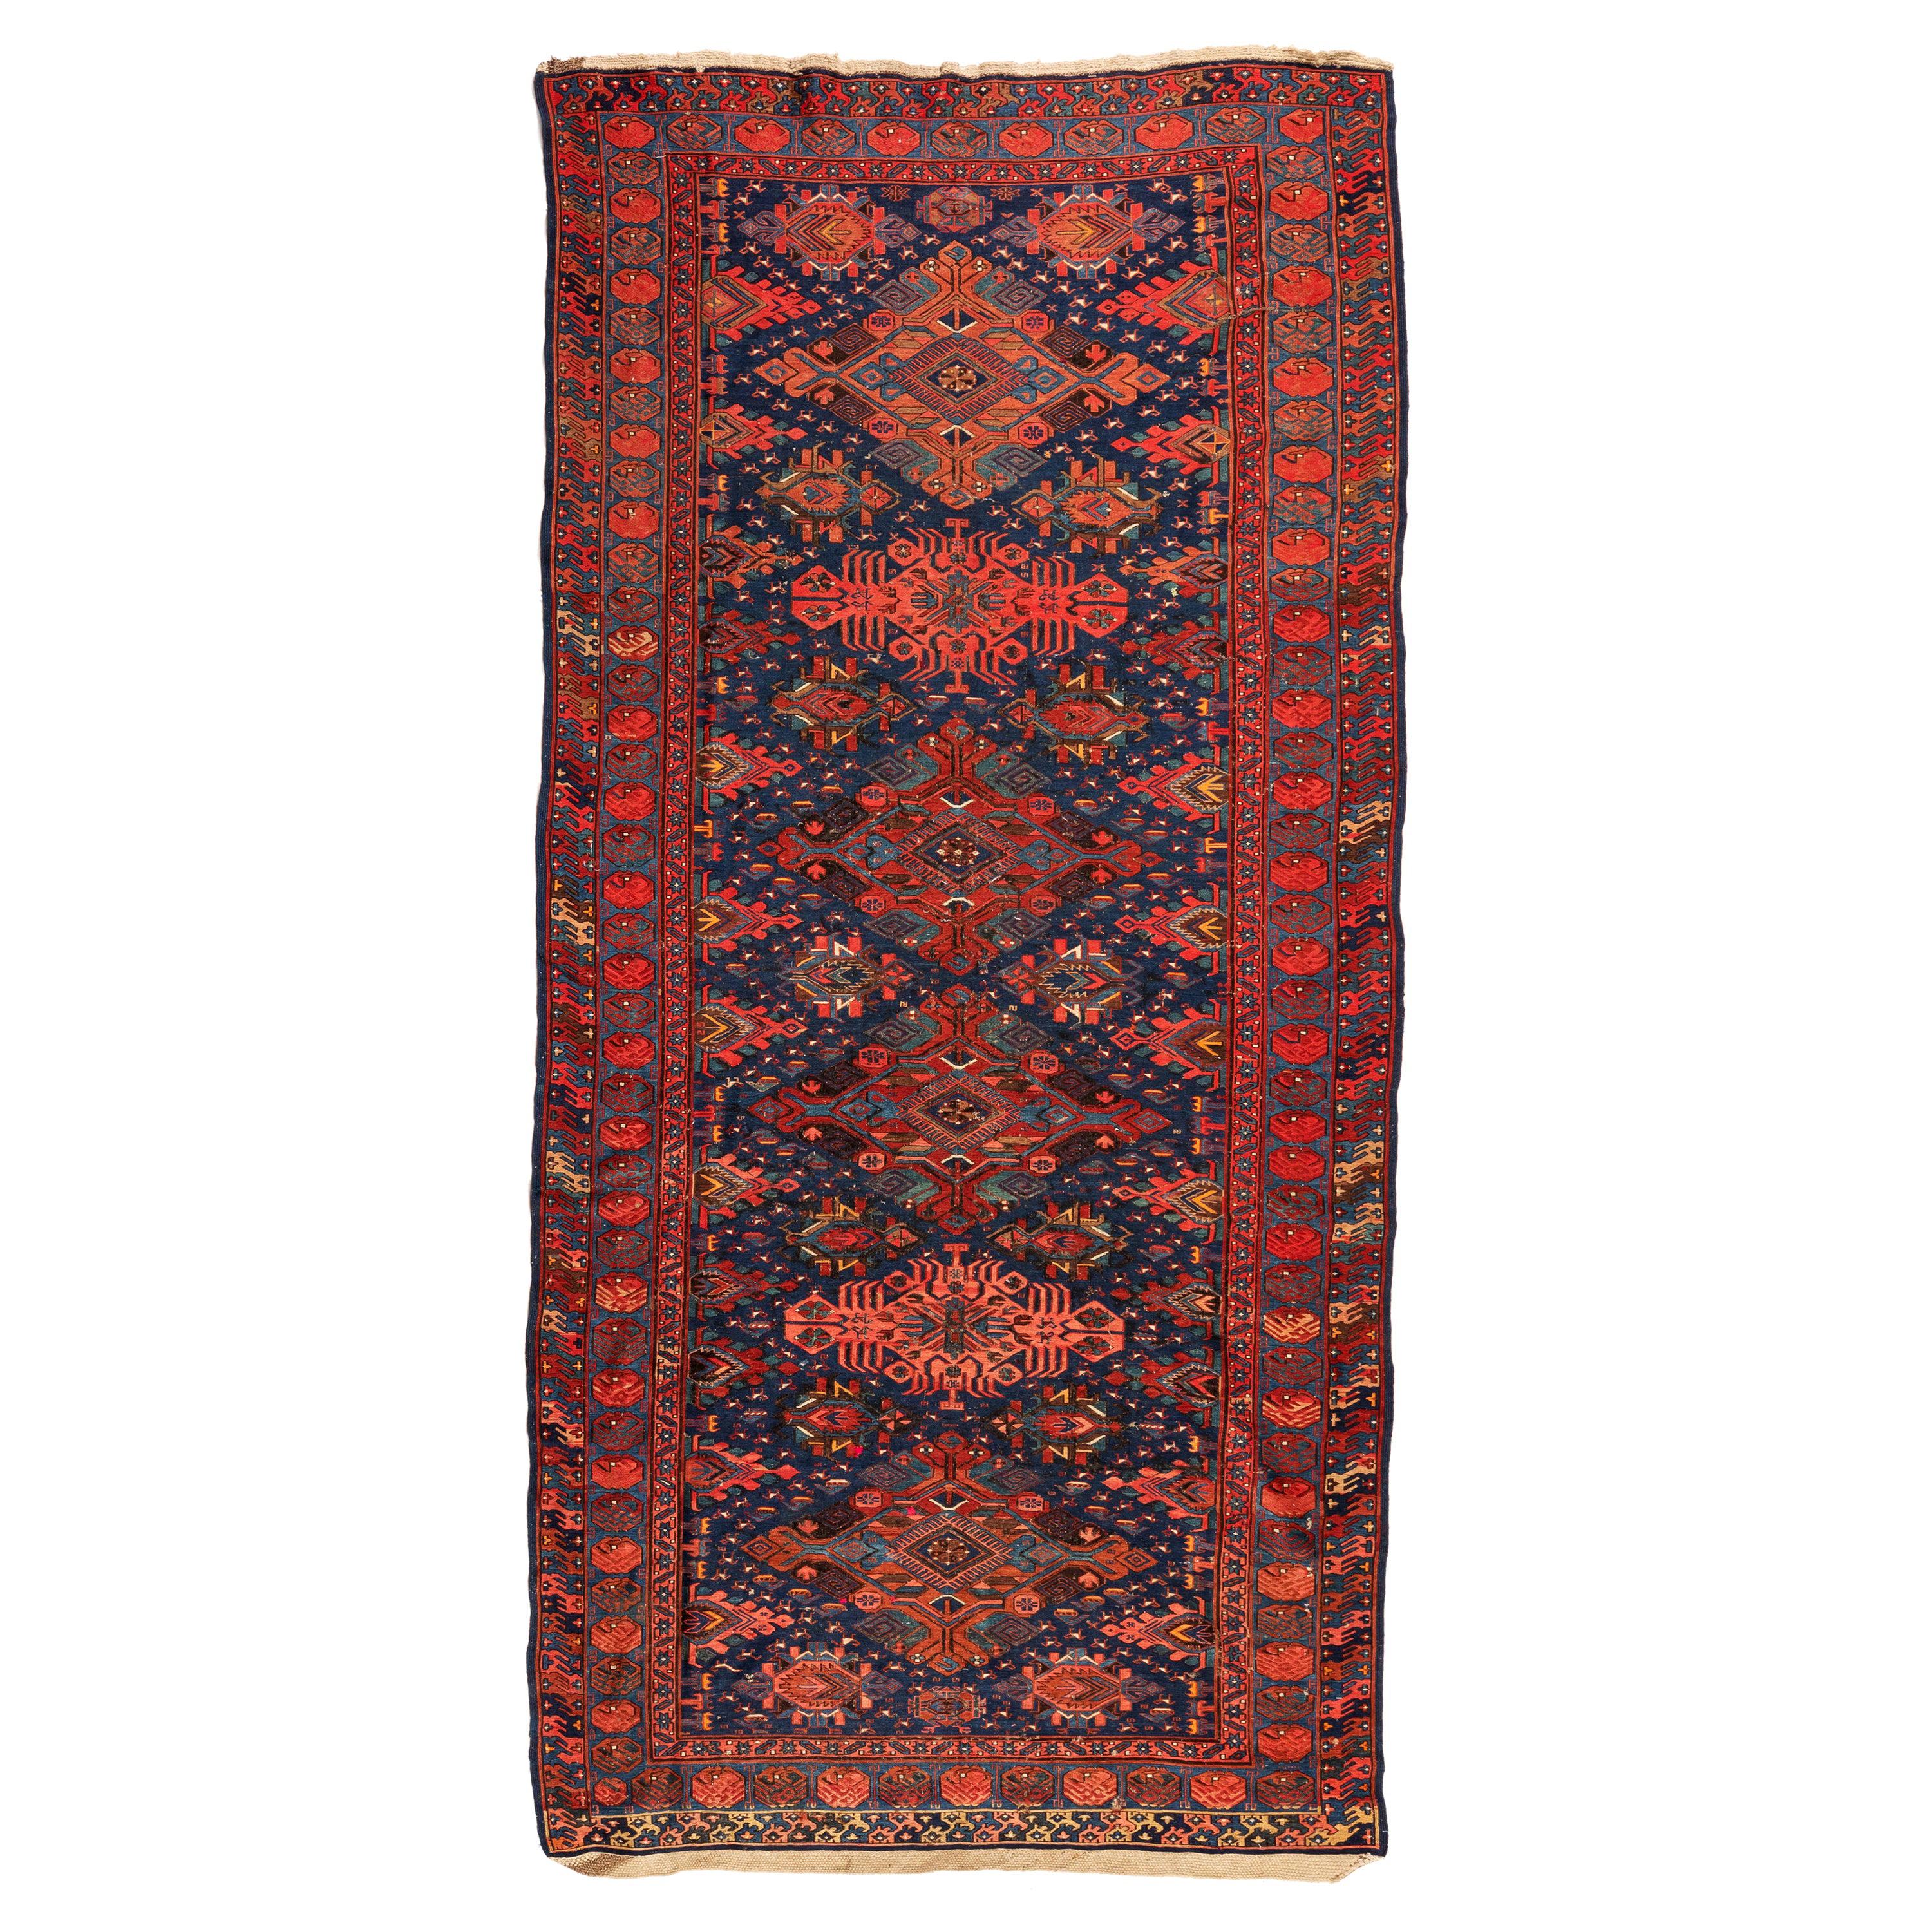 Tapis Soumak caucasien ancien rouge et bleu marine à motifs géométriques